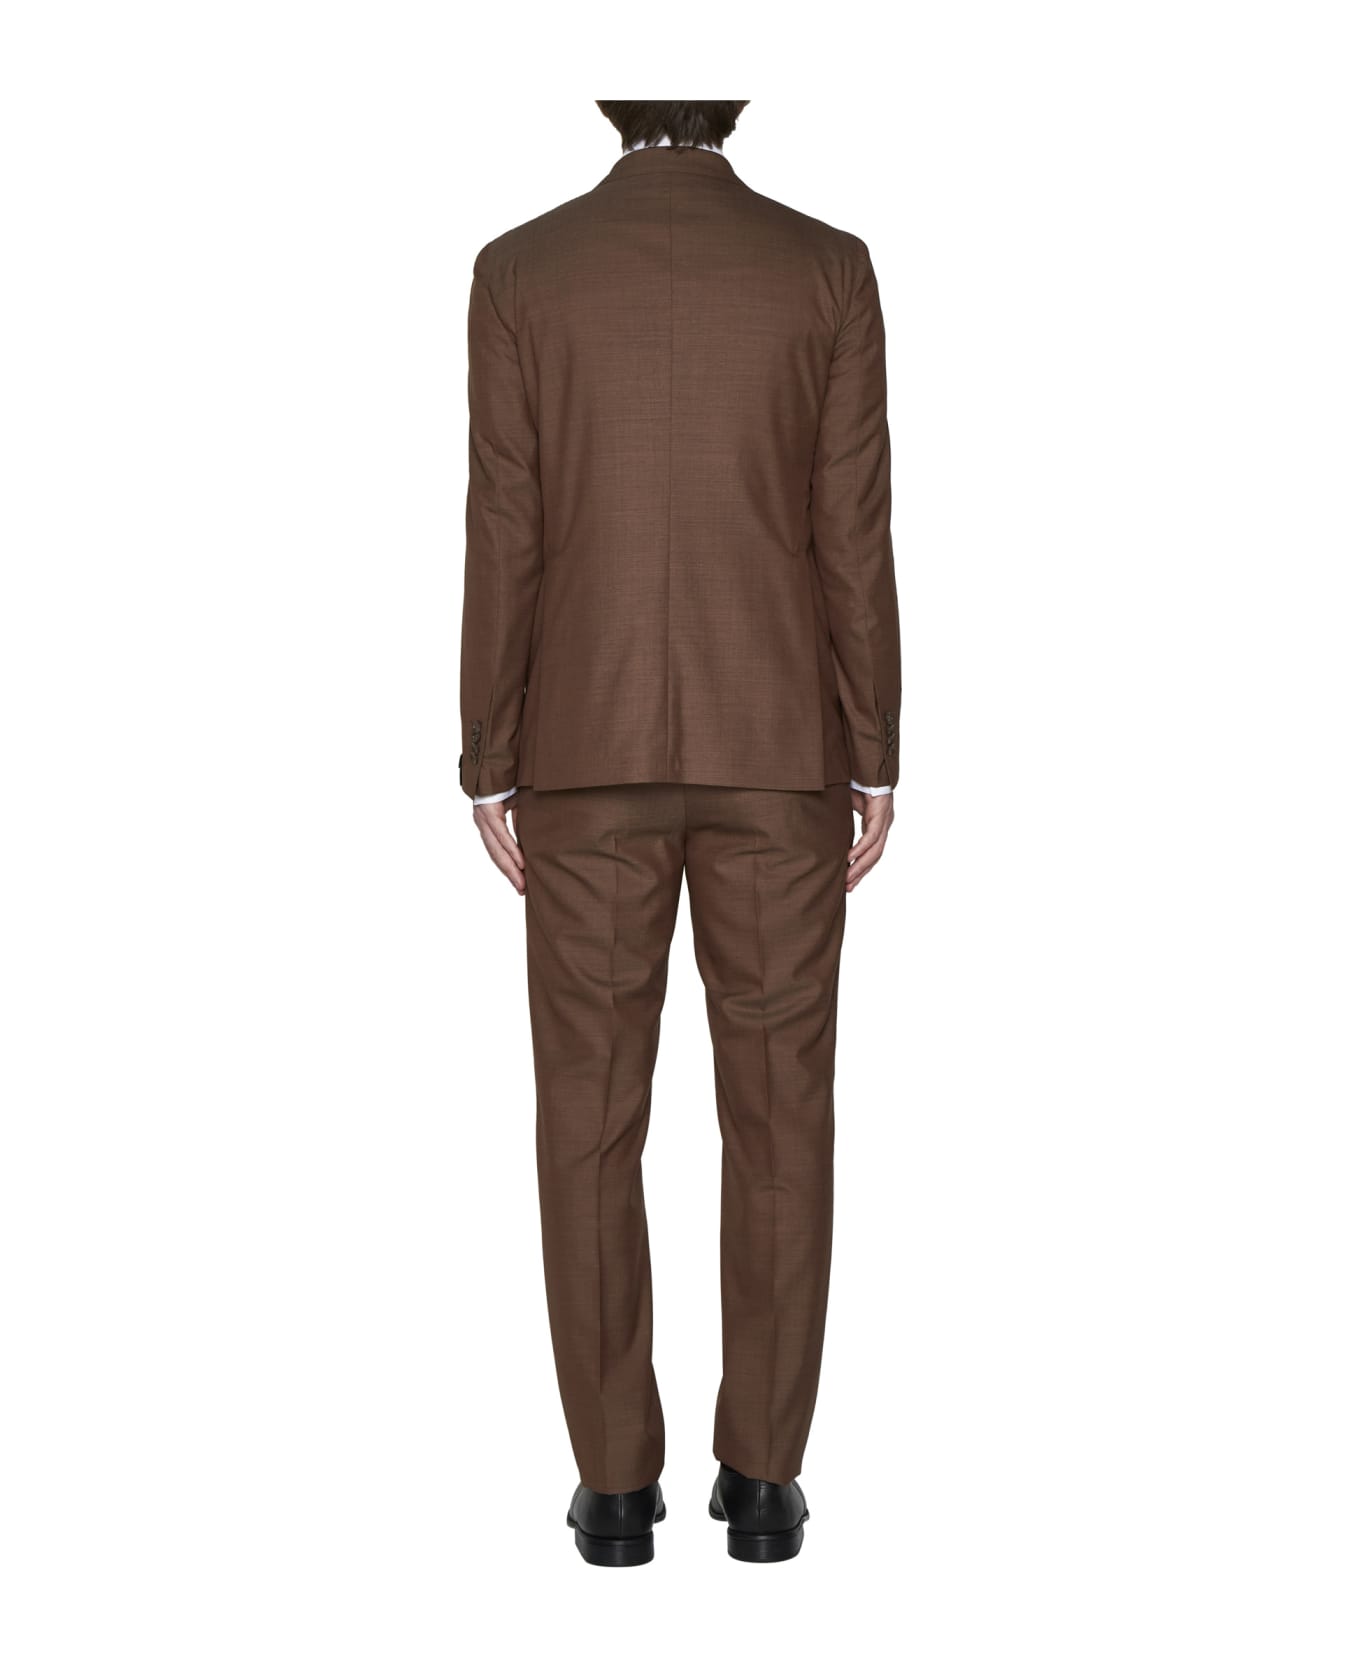 Tagliatore Suit - Marrone スーツ